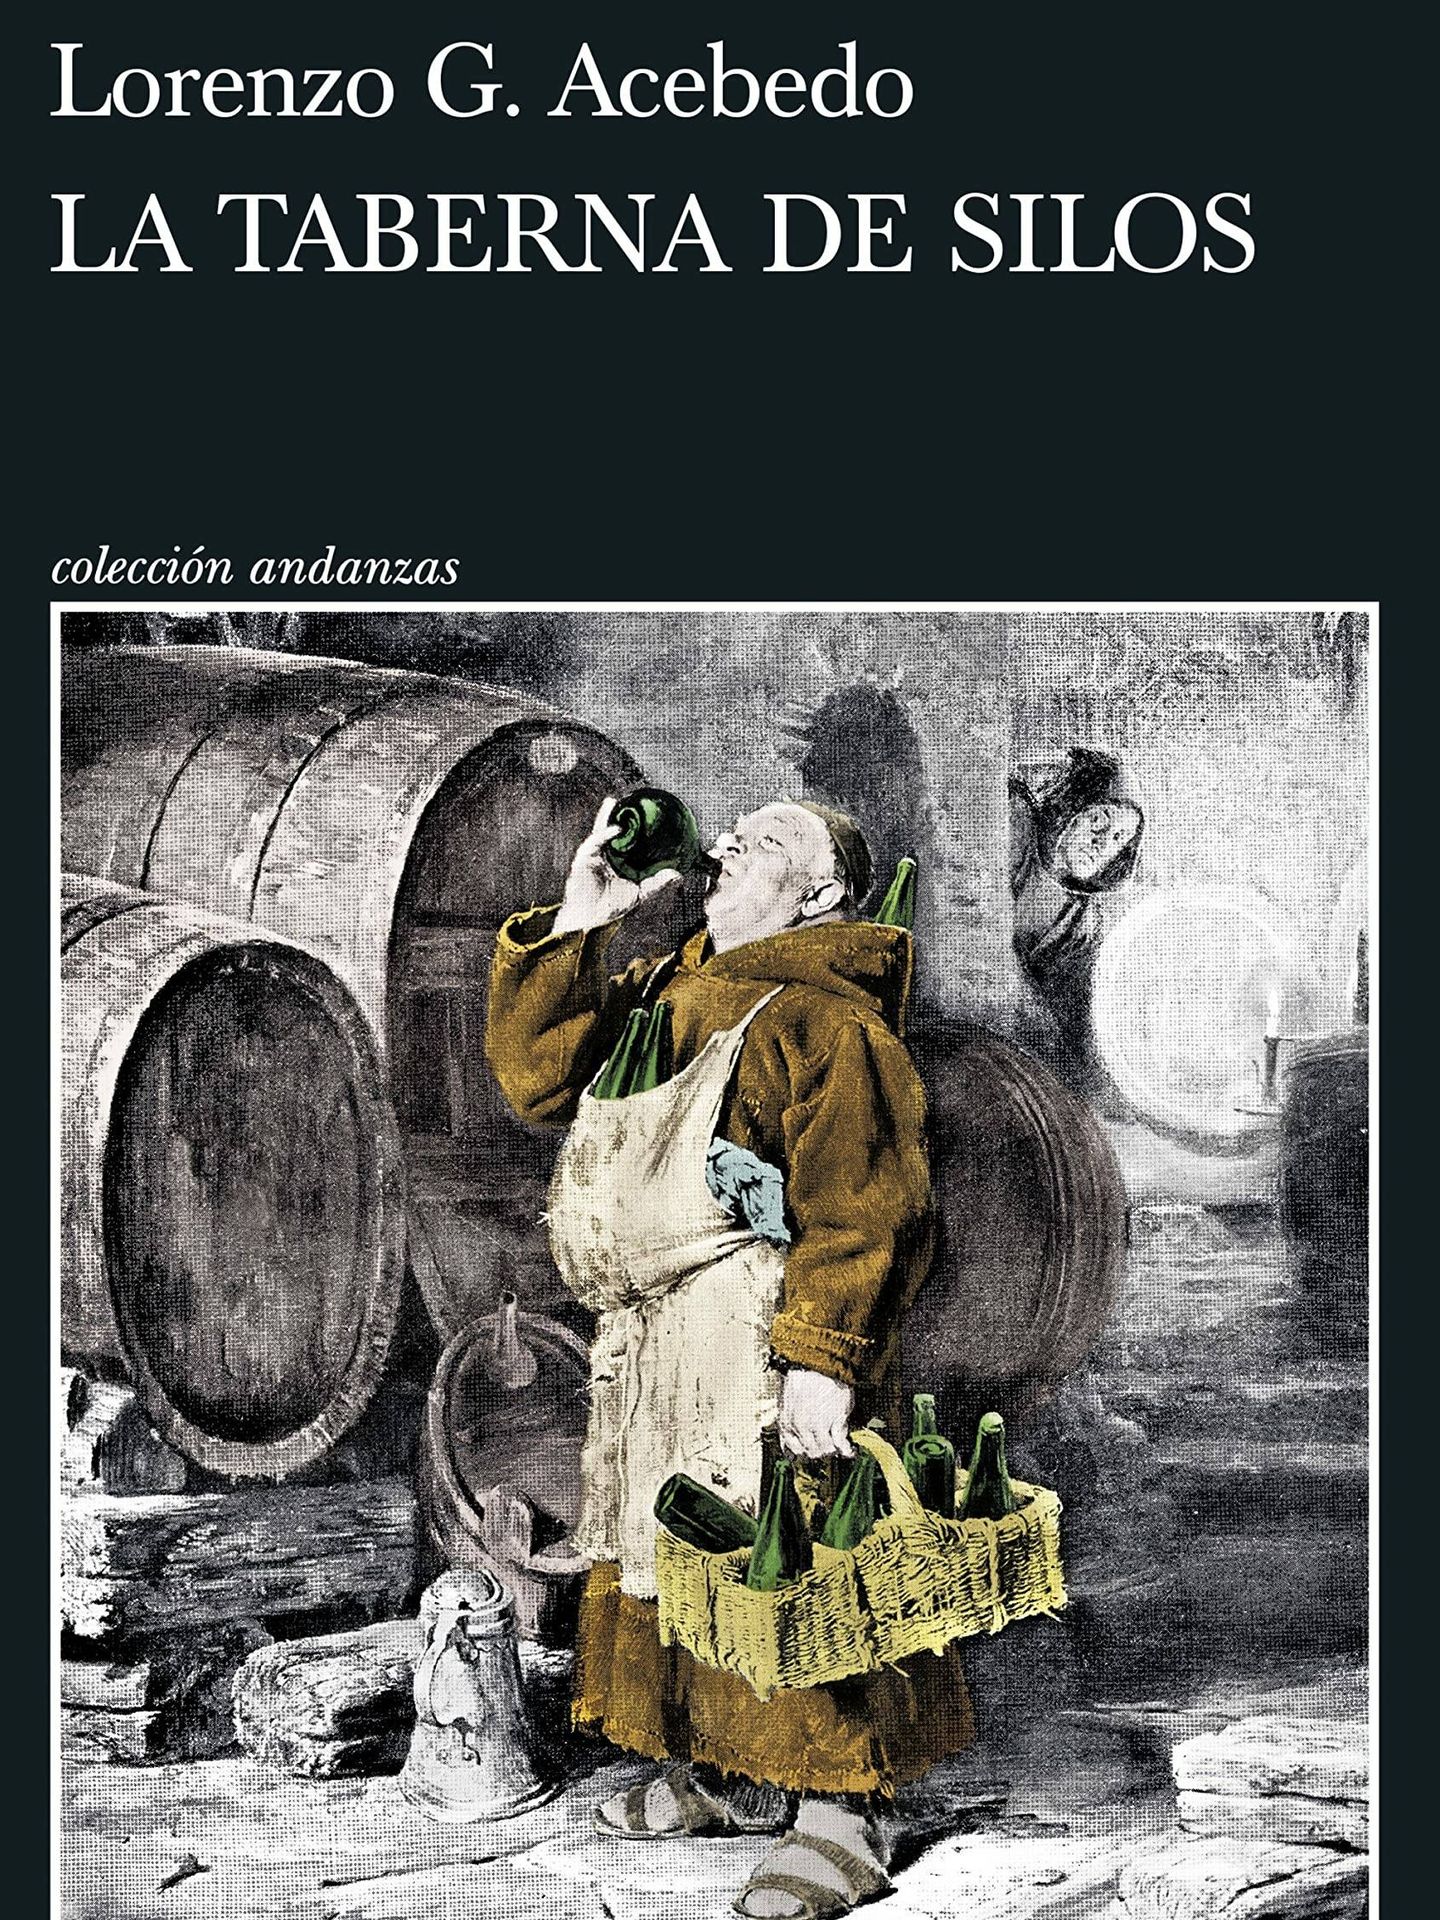 Portada de 'La taberna de Silos', publicada bajo el seudónimo Lorenzo G. Acebedo.